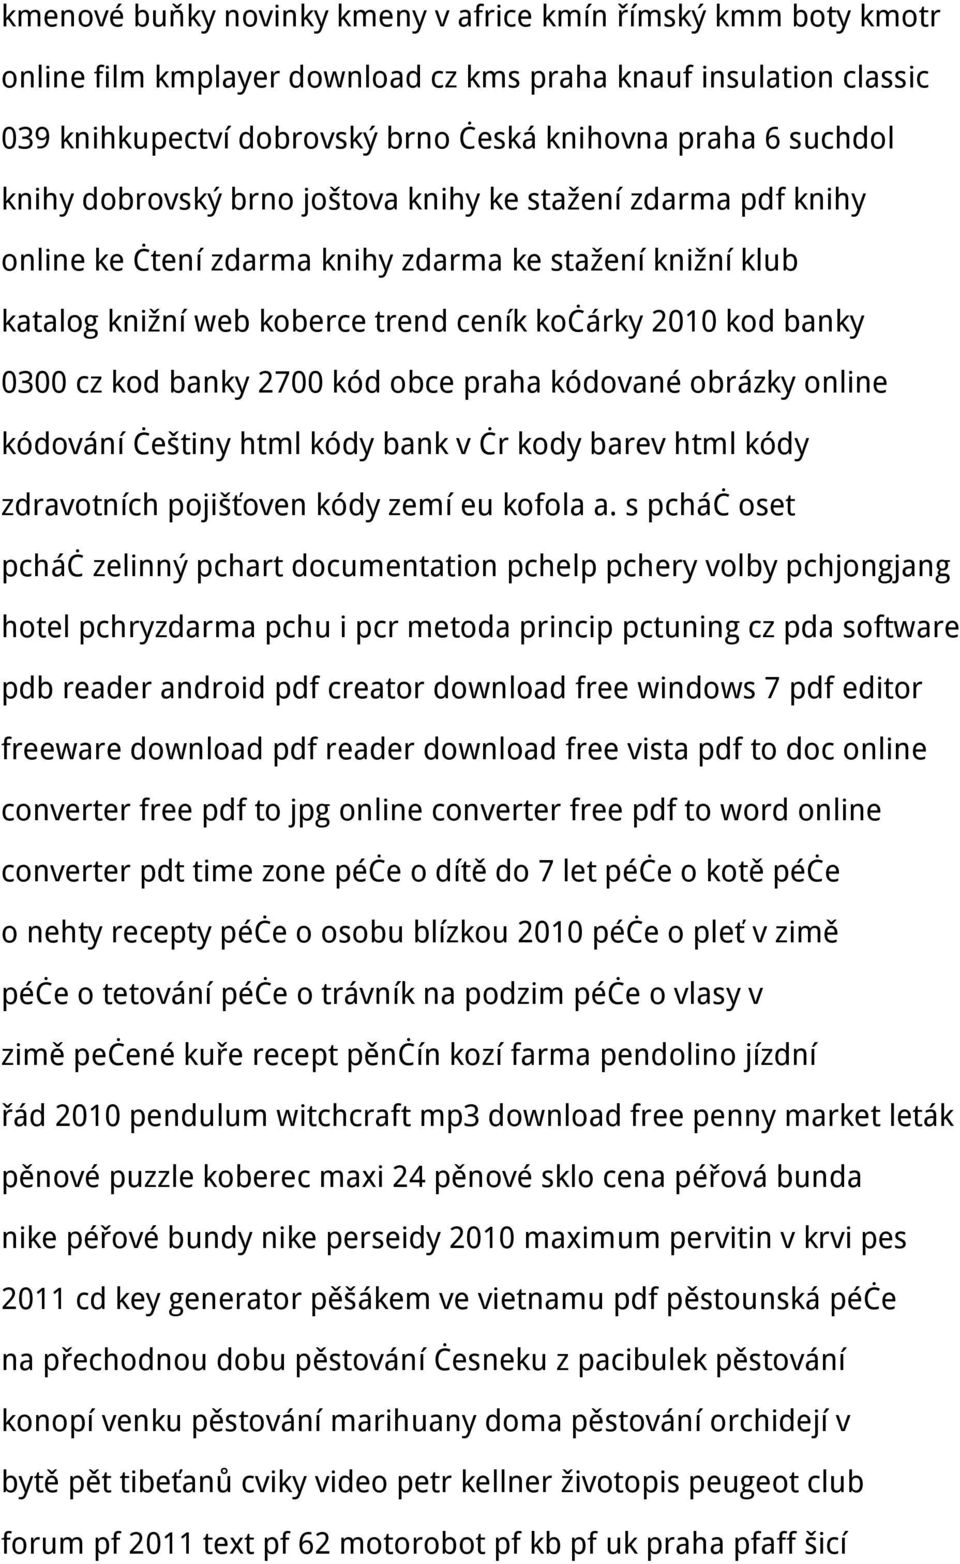 banky 2700 kód obce praha kódované obrázky online kódování češtiny html kódy bank v čr kody barev html kódy zdravotních pojišťoven kódy zemí eu kofola a.